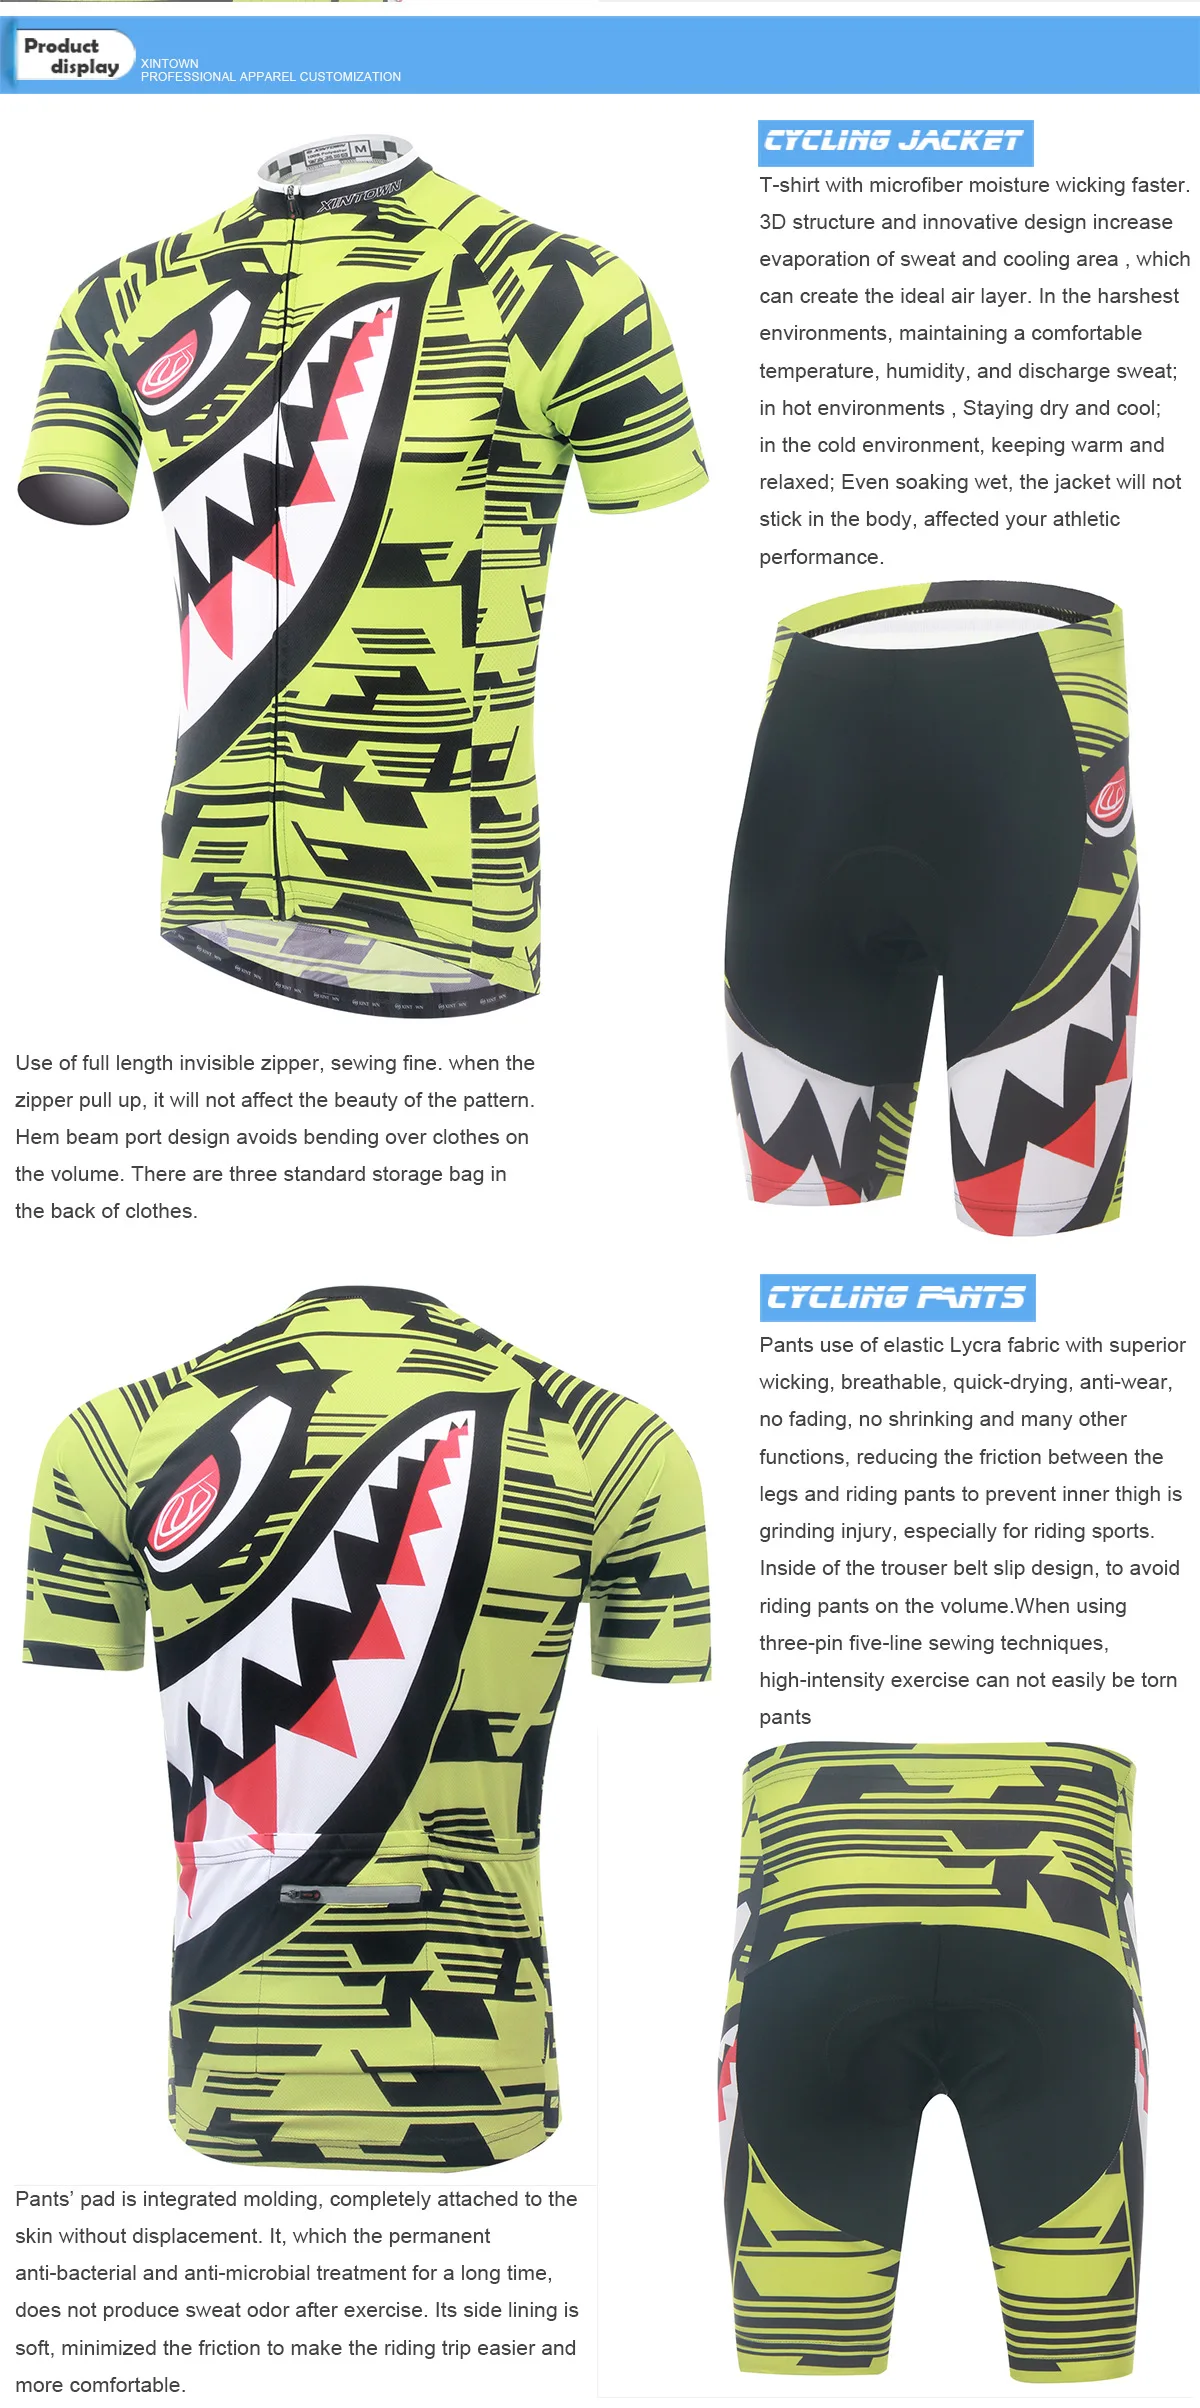 XINTOWN Ying shark riding jersey рубашка с короткими рукавами велосипедные костюмы Летняя быстросохнущая рубашка